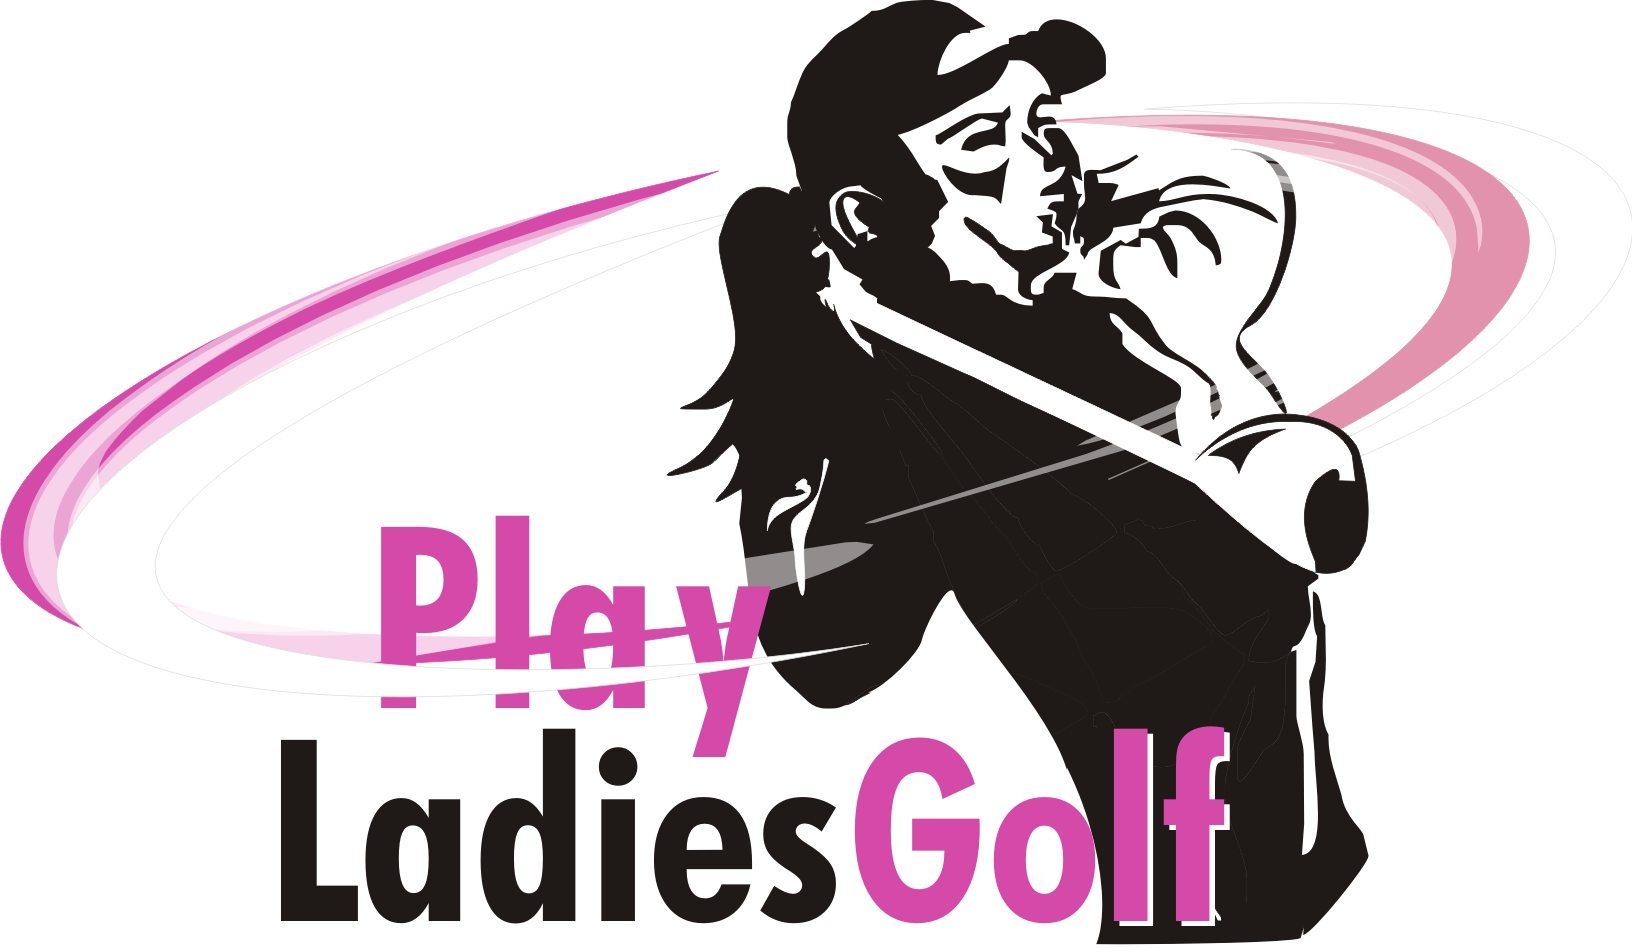 Ladies golf